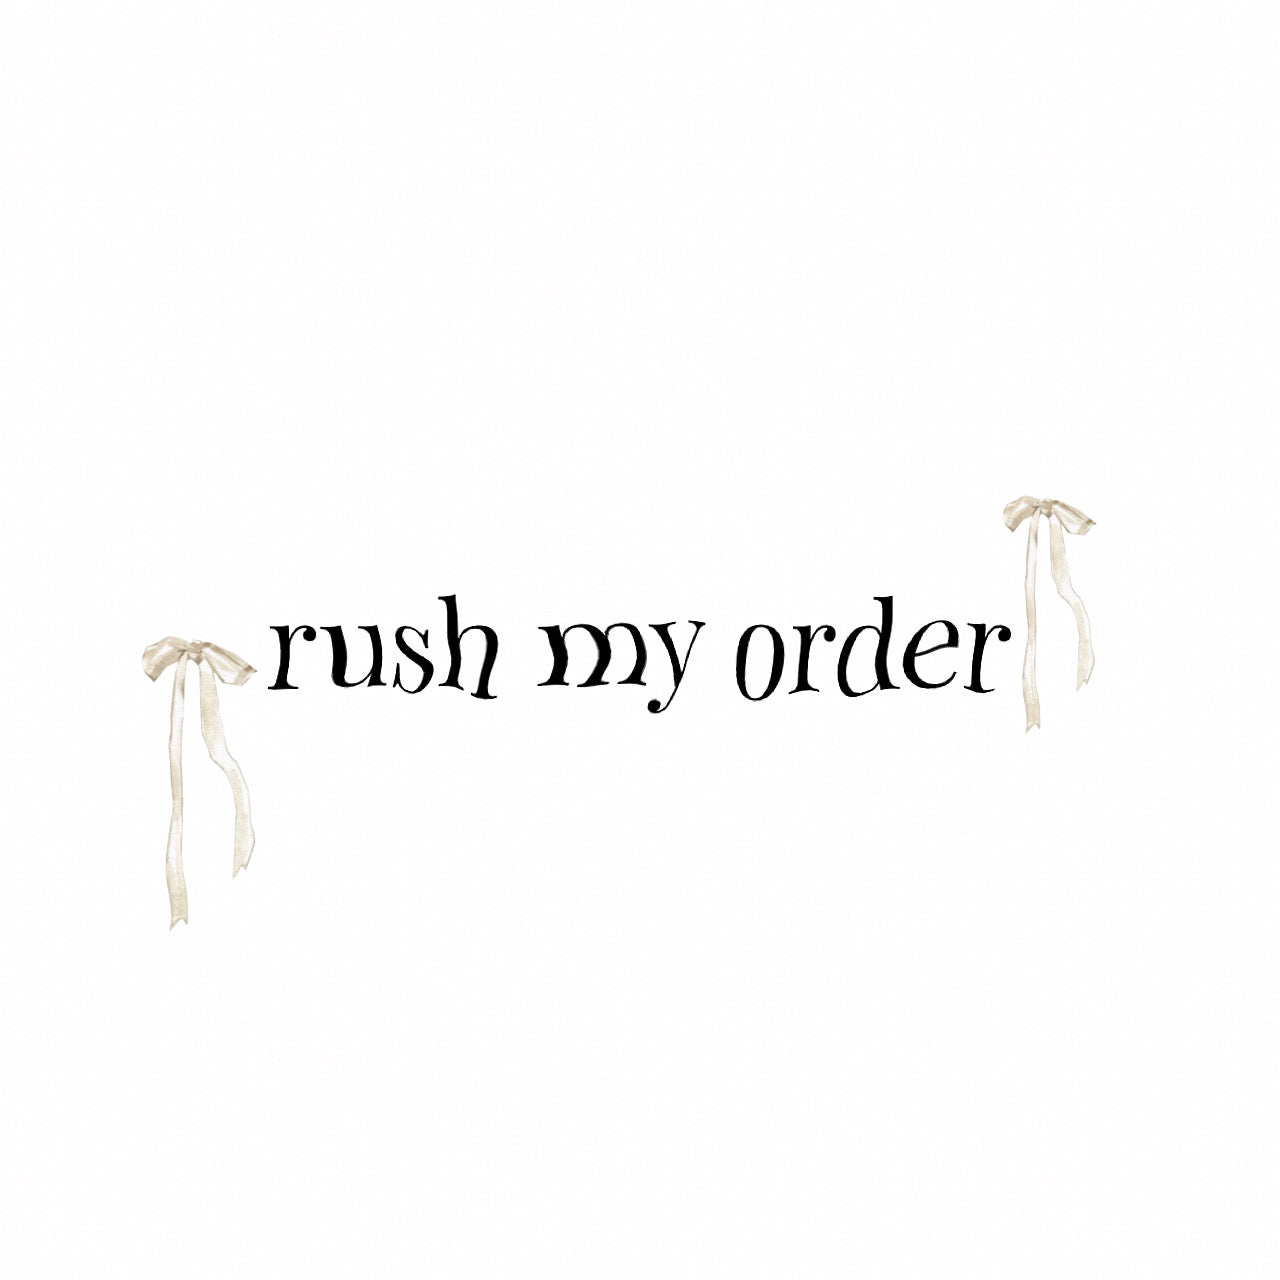 rush my order.